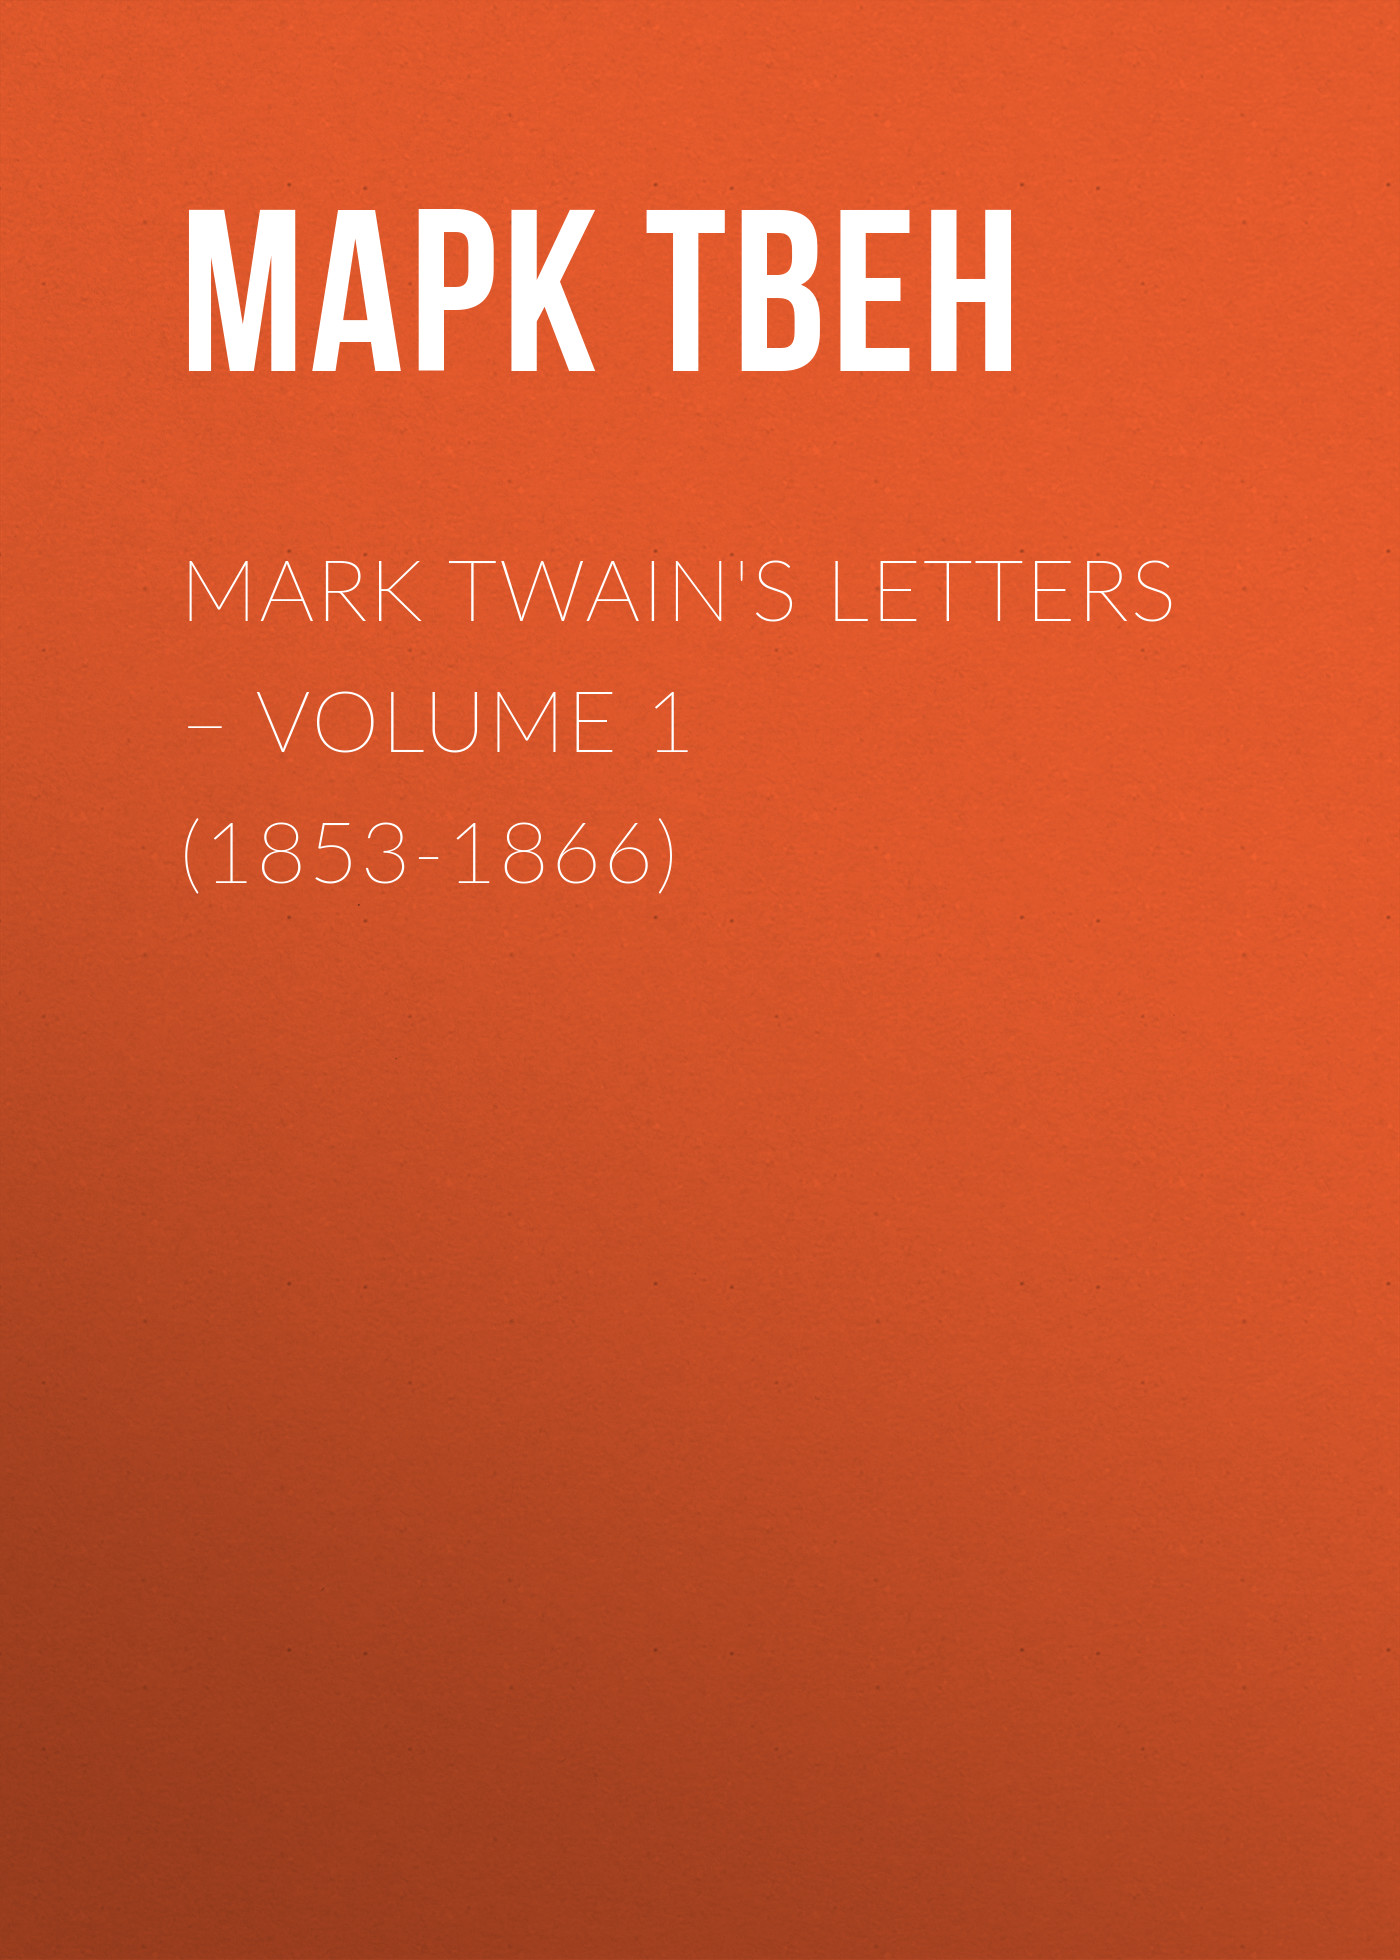 Книга Mark Twain's Letters – Volume 1 (1853-1866) из серии , созданная Марк Твен, Albert Paine, может относится к жанру Зарубежная старинная литература, Зарубежная классика. Стоимость электронной книги Mark Twain's Letters – Volume 1 (1853-1866) с идентификатором 25474439 составляет 0 руб.